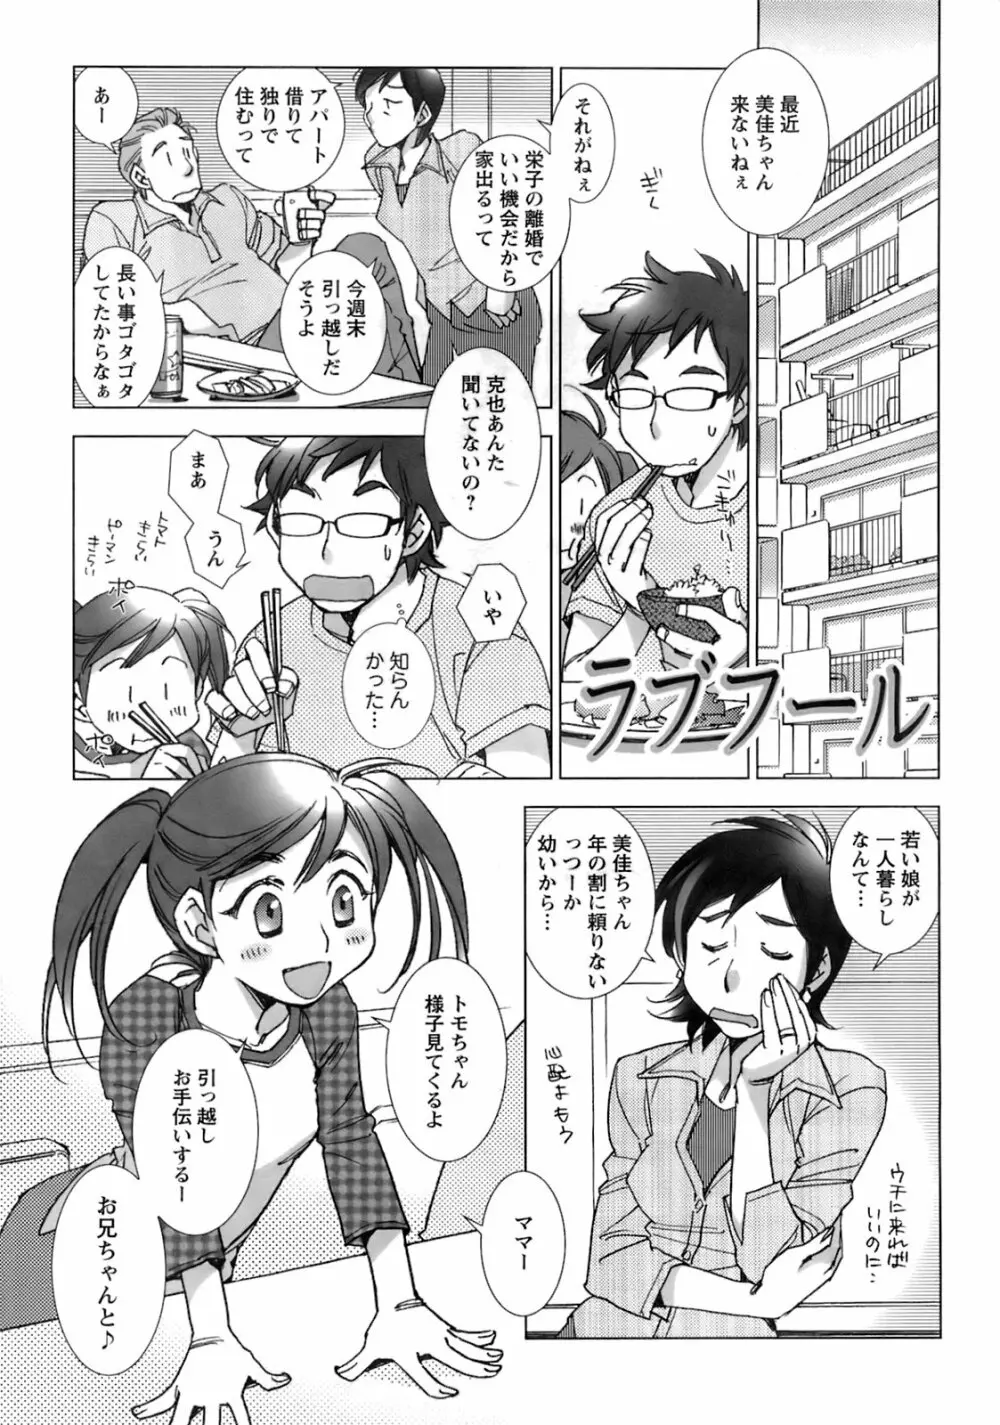 メンズヤングスペシャルIKAZUCHI雷 Vol.6 2008年6月号増刊 34ページ